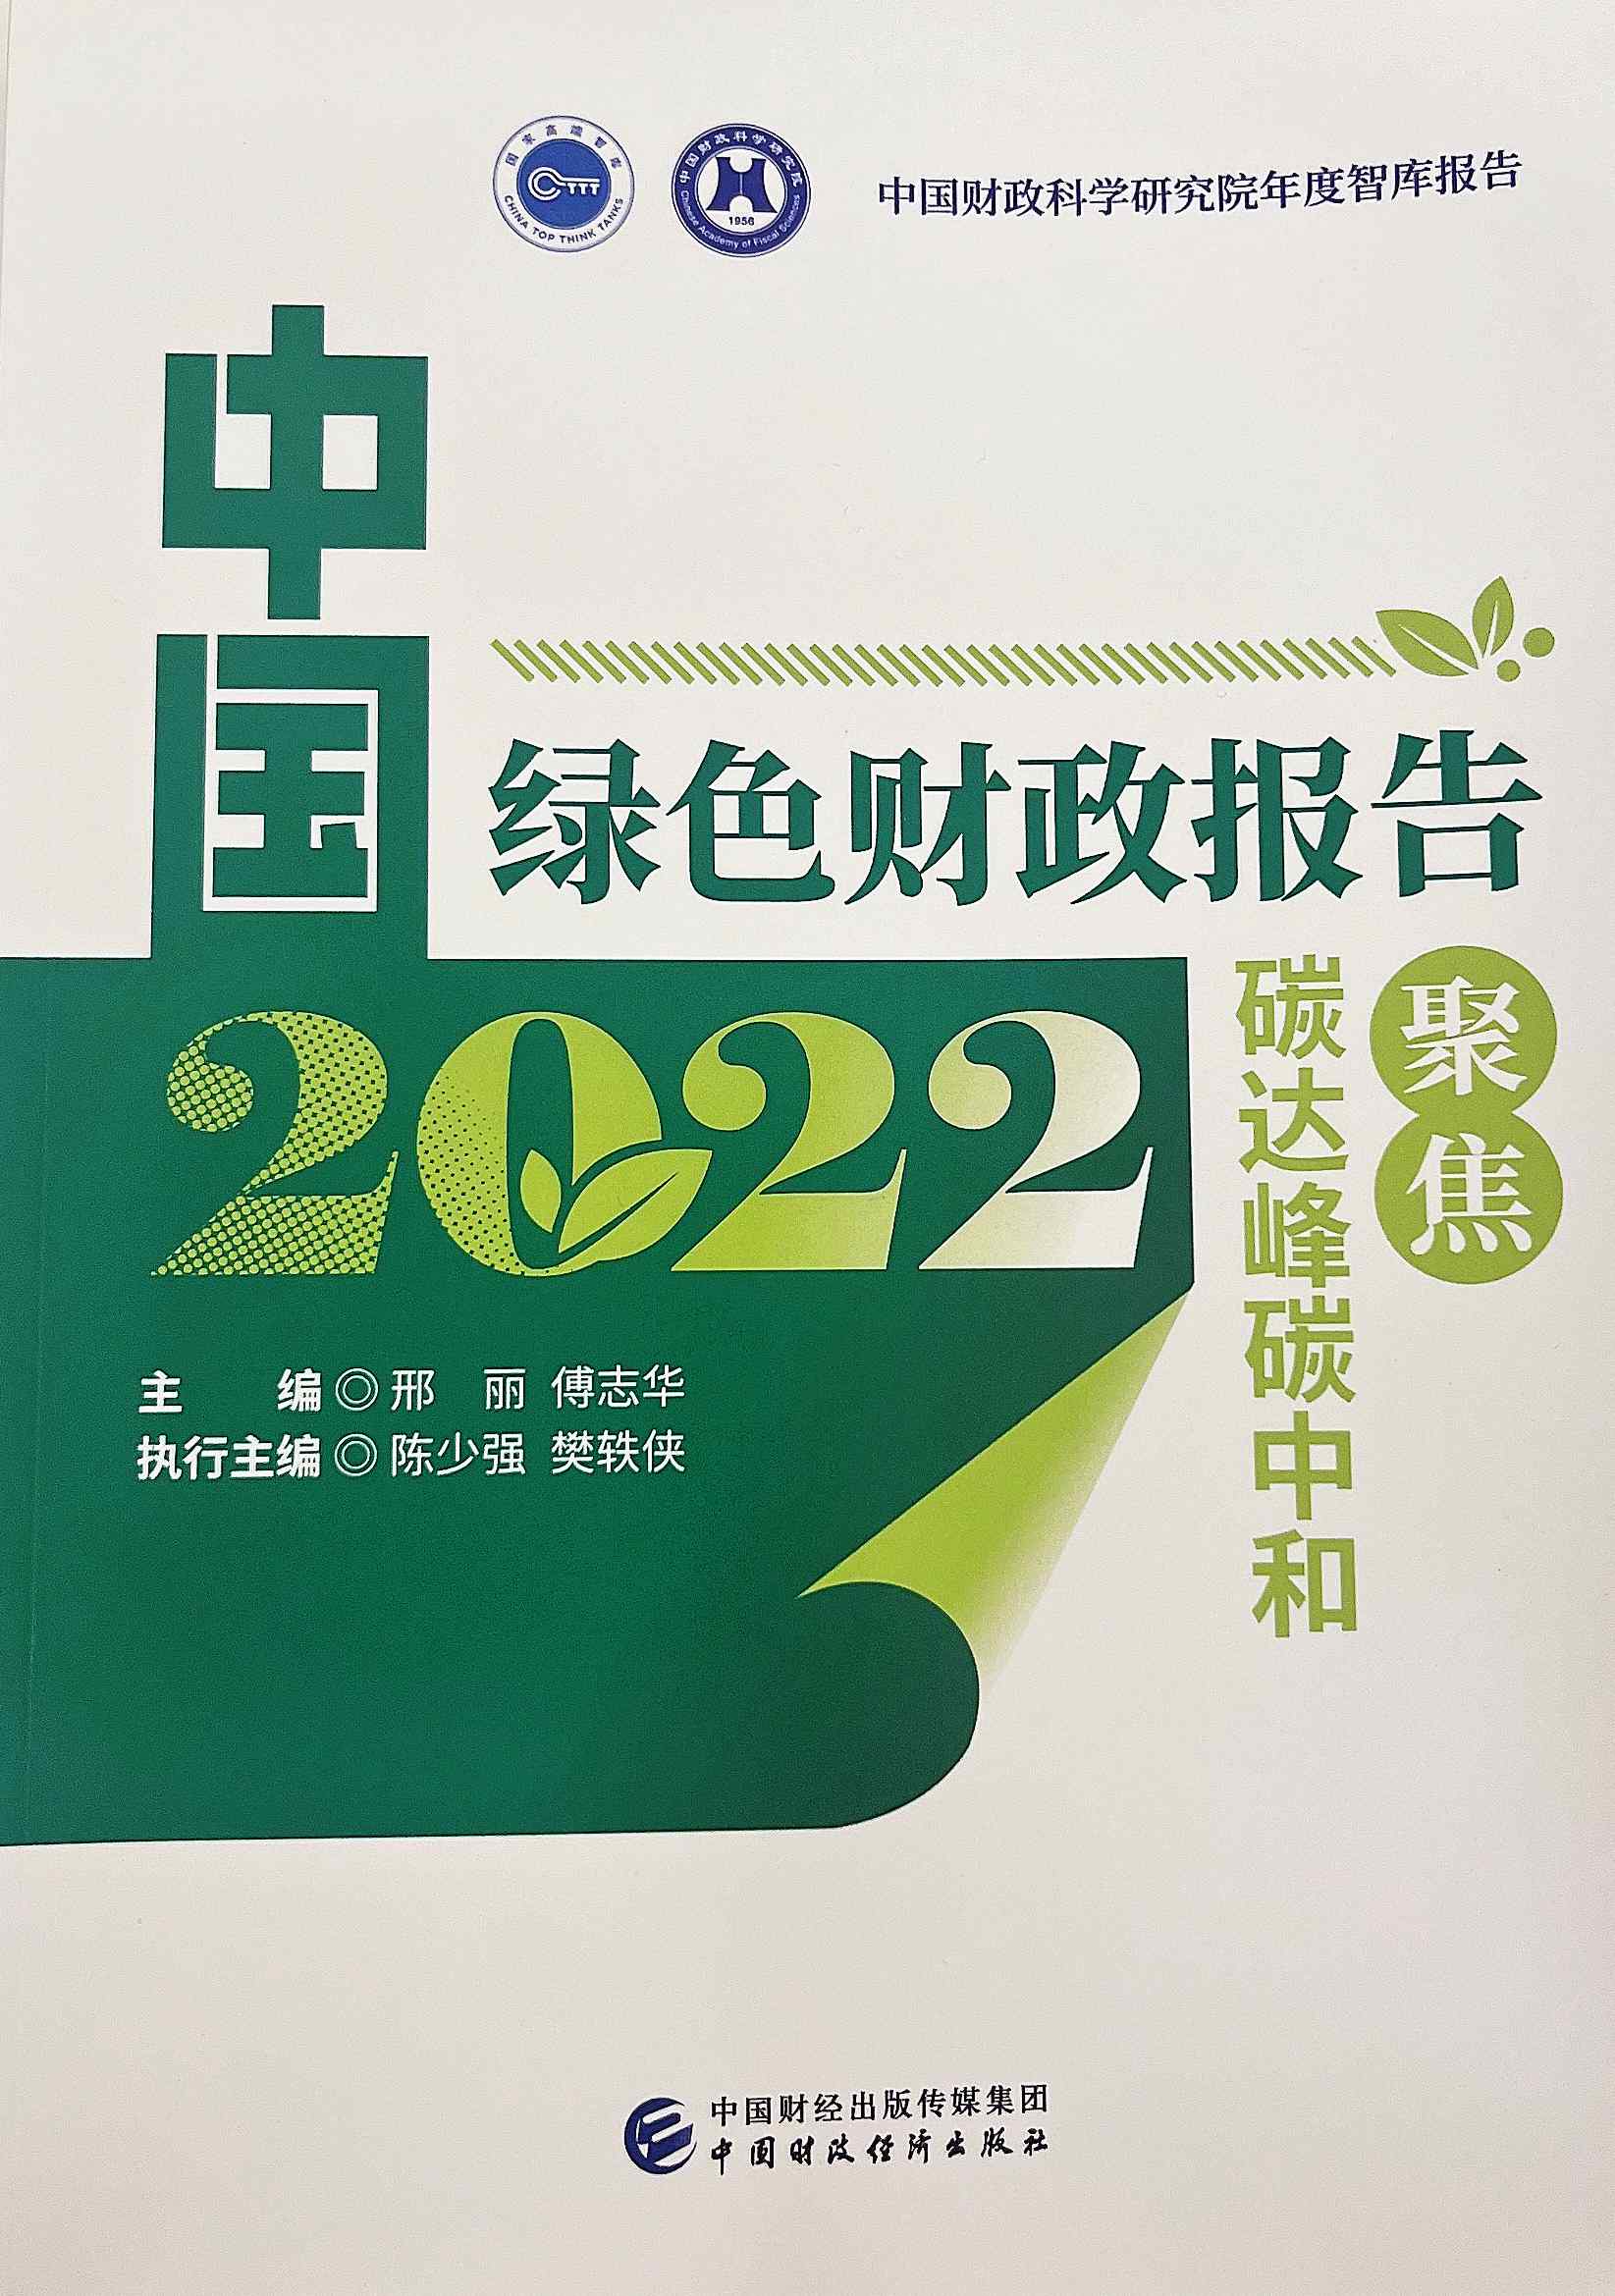 图为《中国绿色财政报告2022：聚焦碳达峰碳中和》